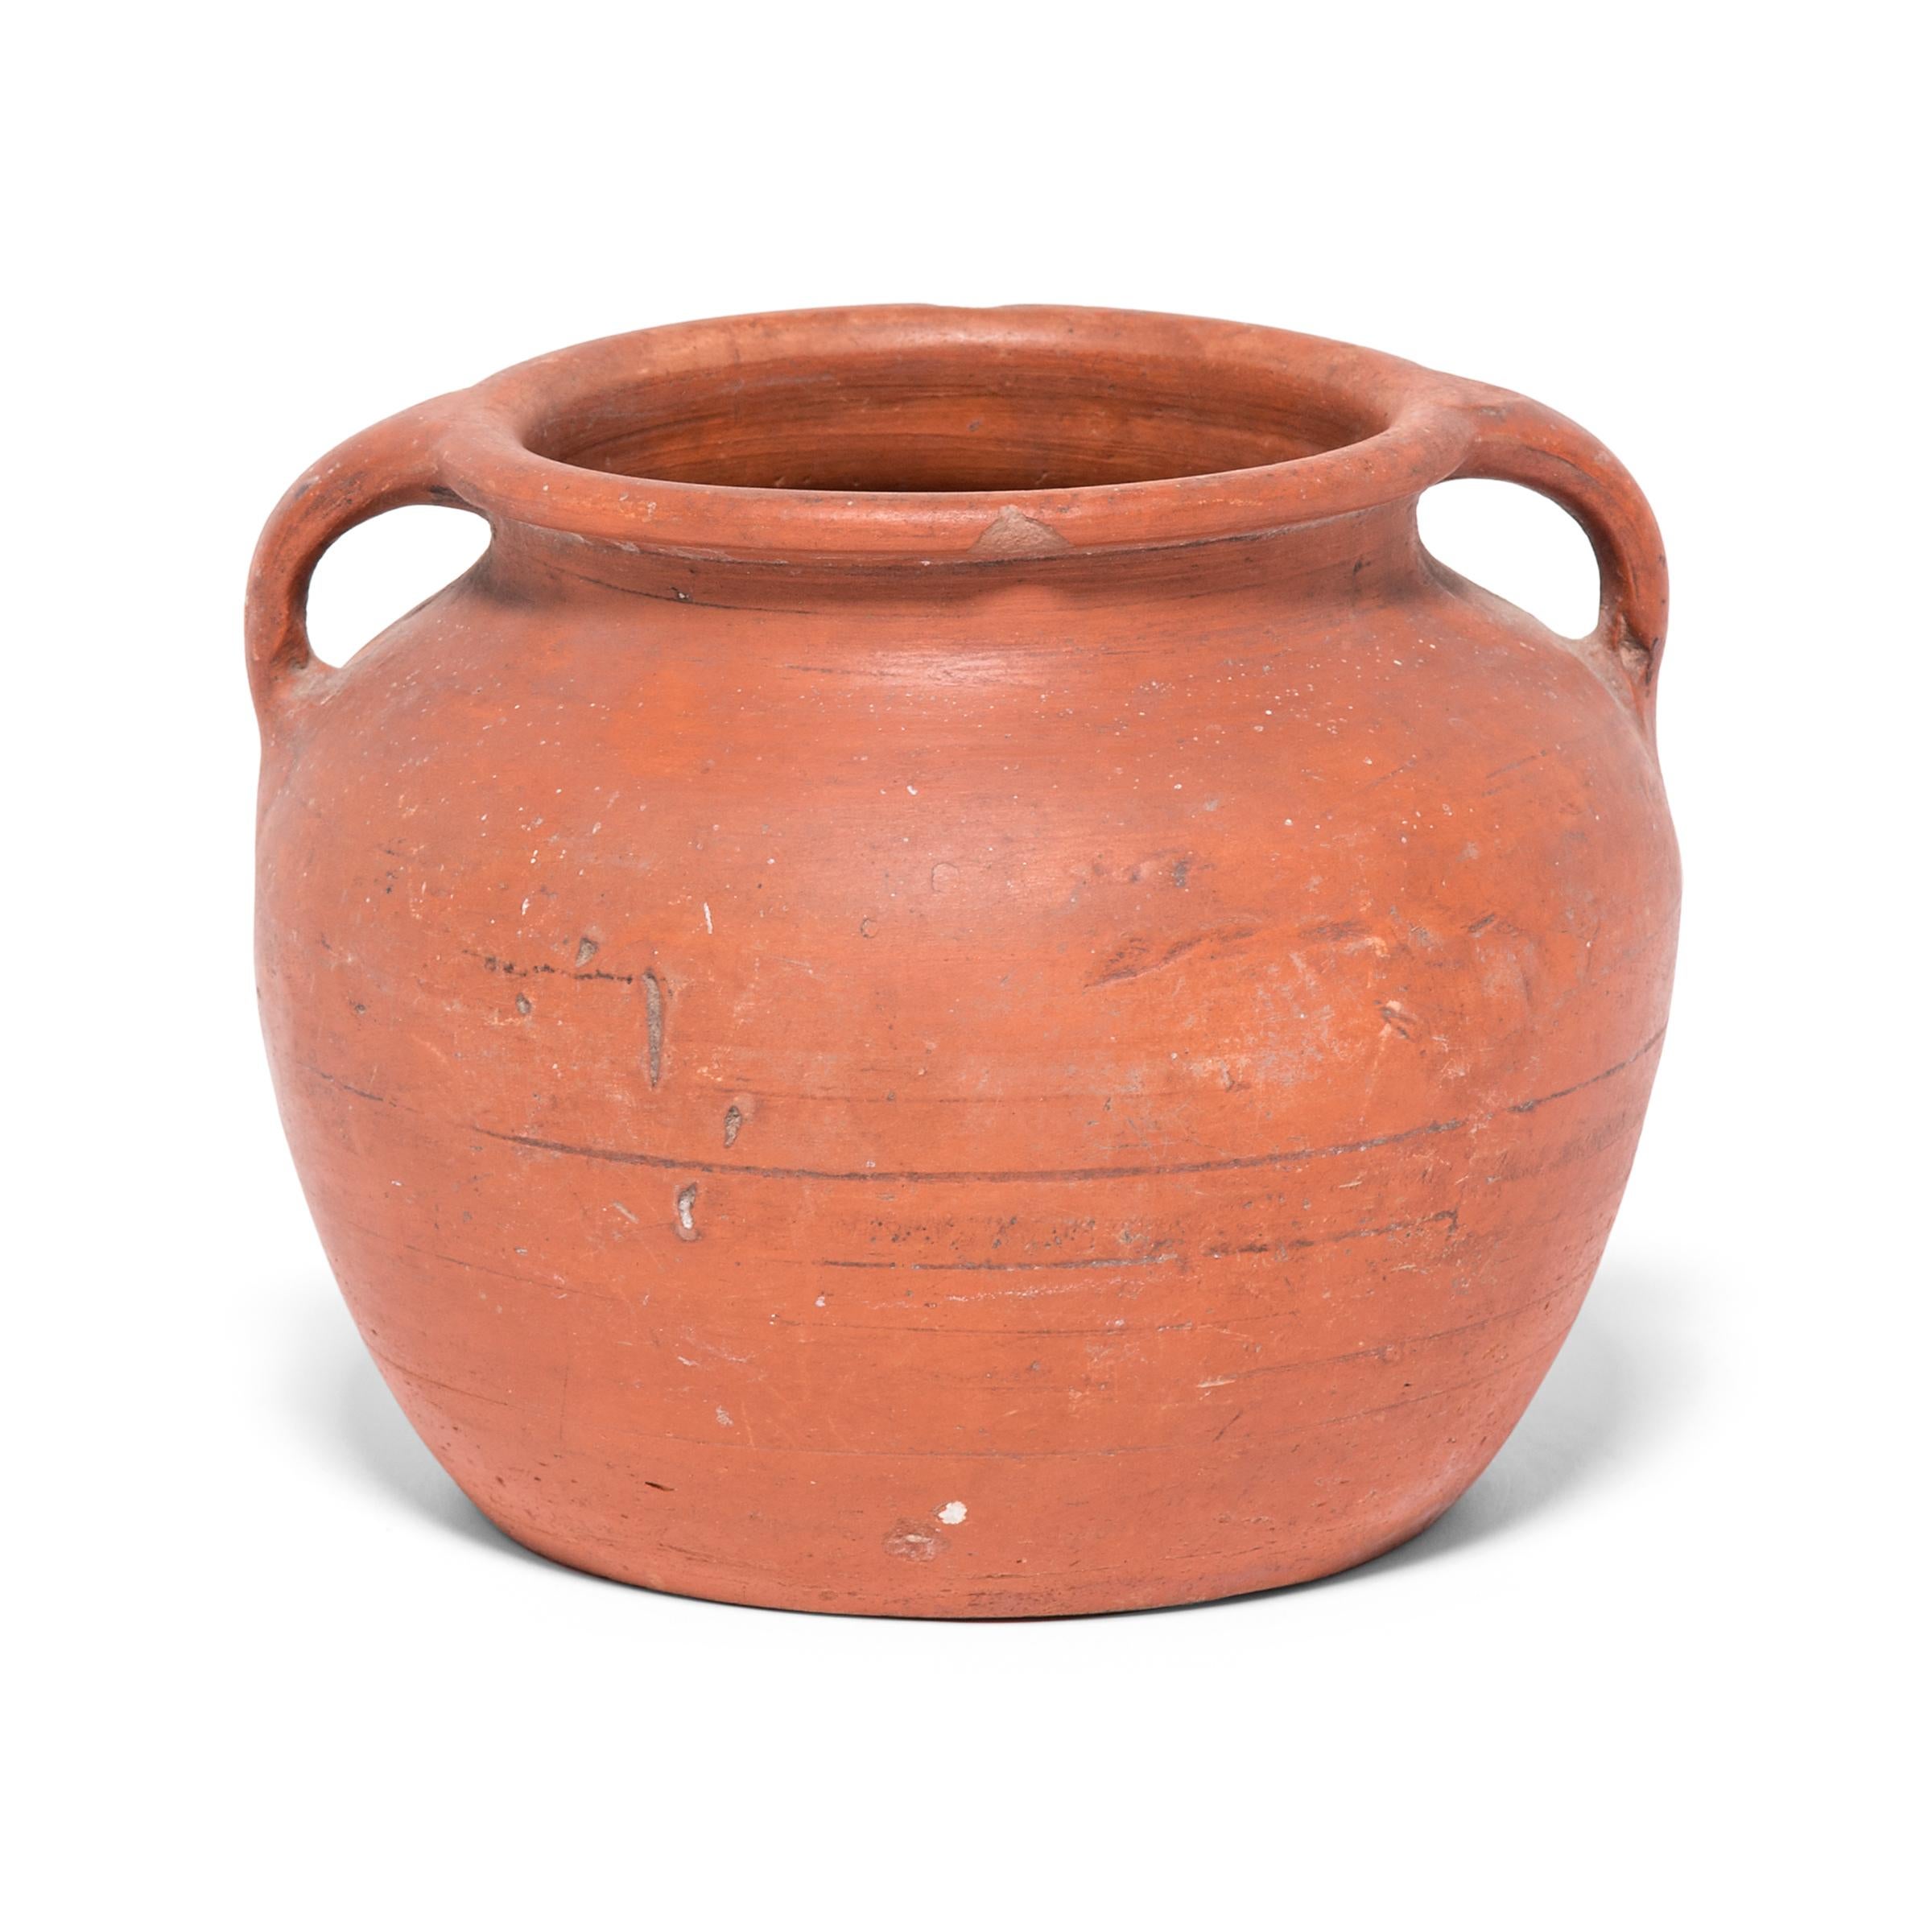 Rustic Terracotta Soup Pot, circa 1900